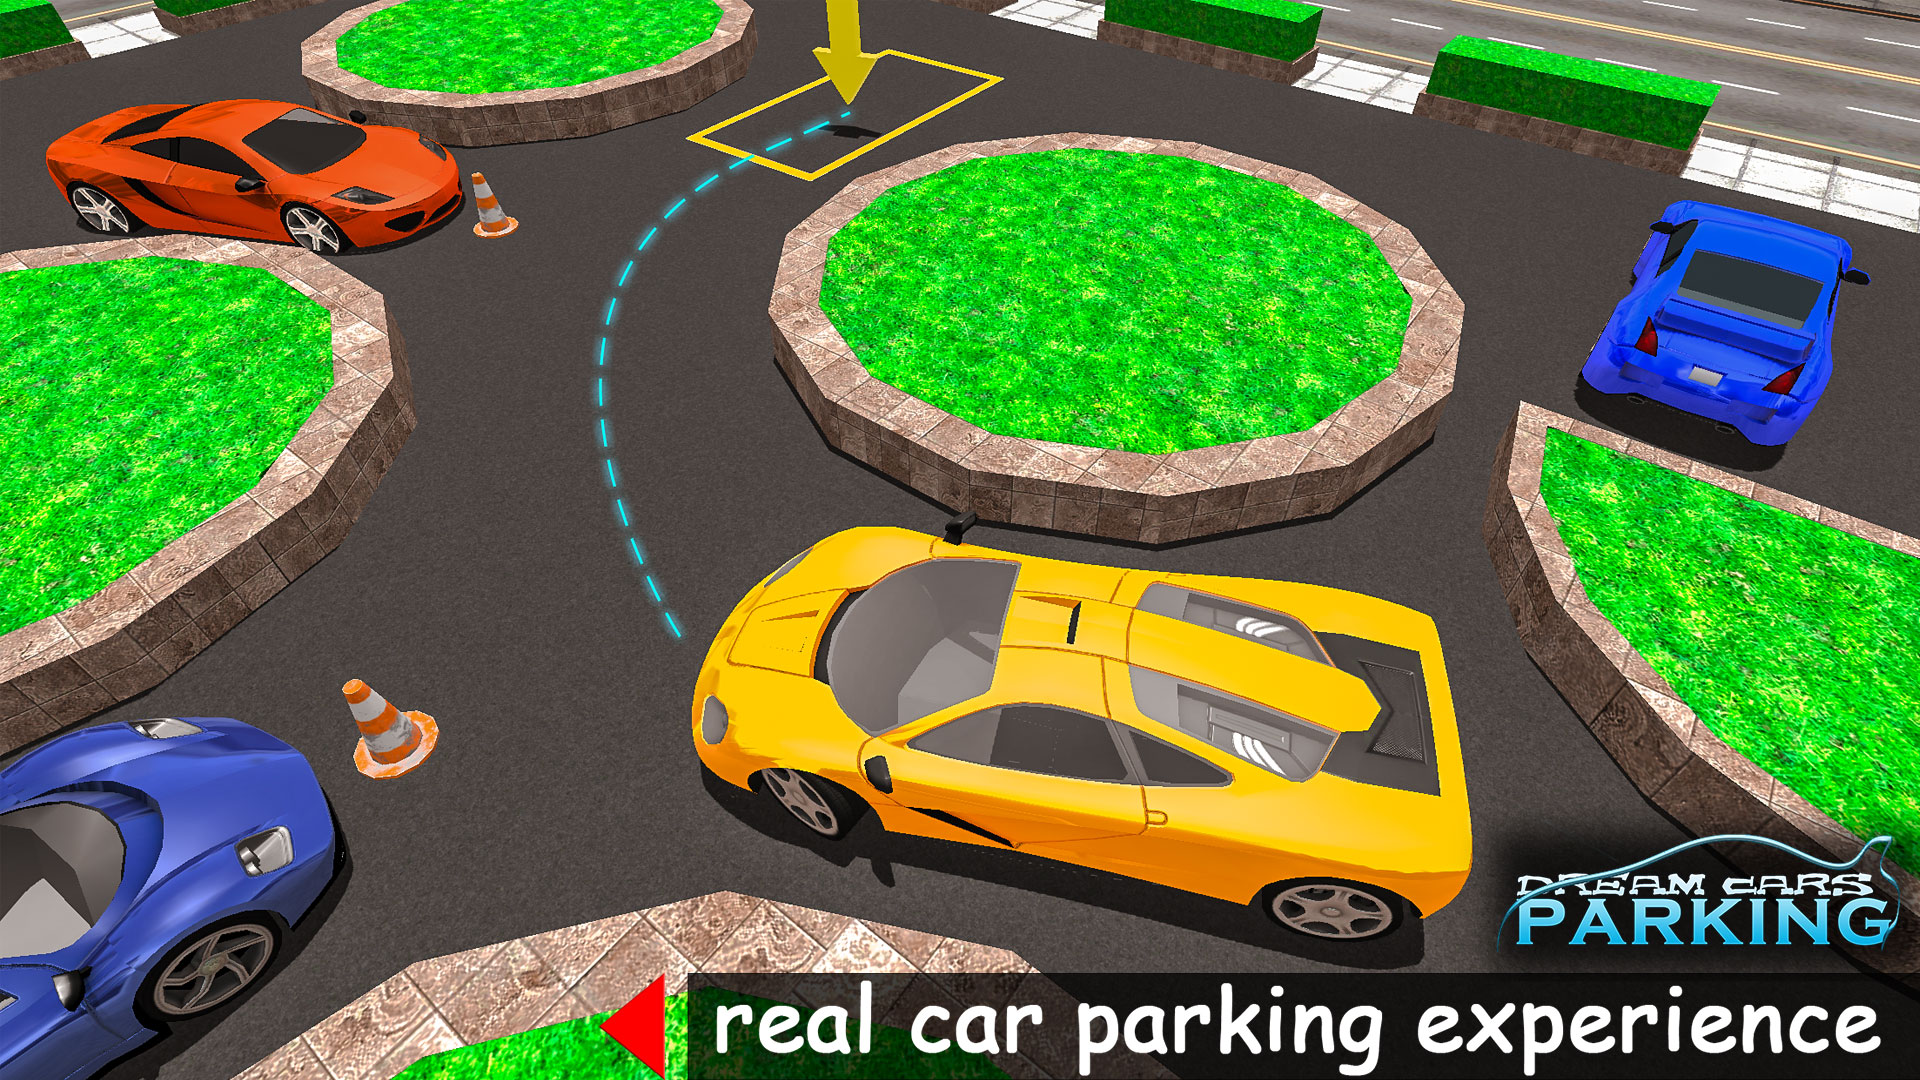 Dream Car Parking Simulator Crazy Car Driver